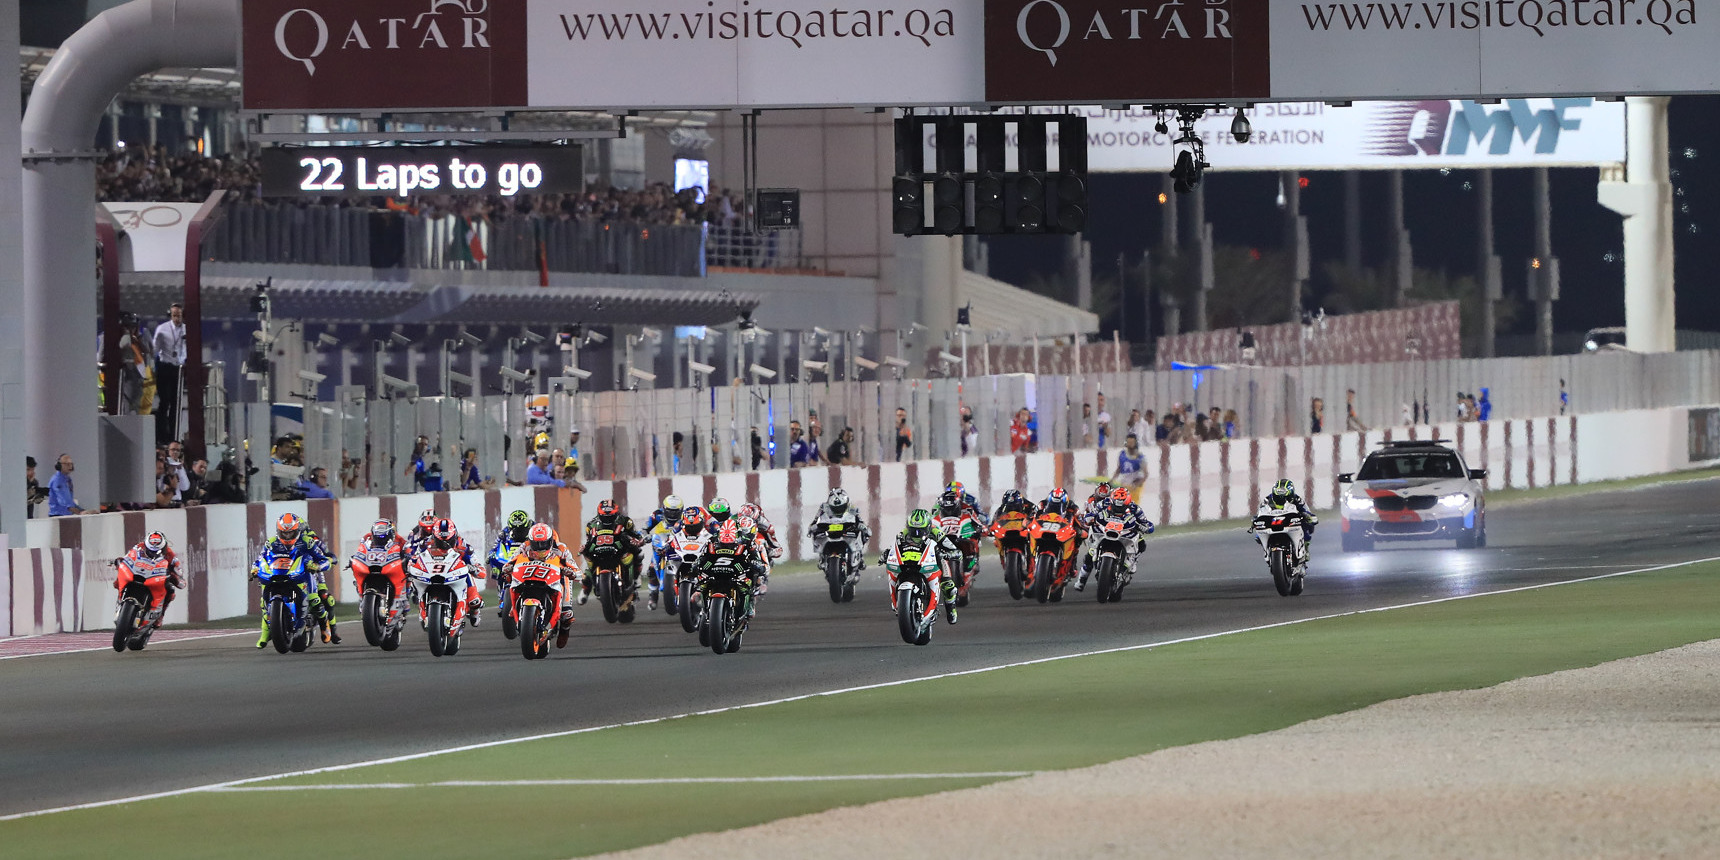 MotoGP-Saisonauftakt in Katar Startzeit bleibt trotz Bedenken unverändert